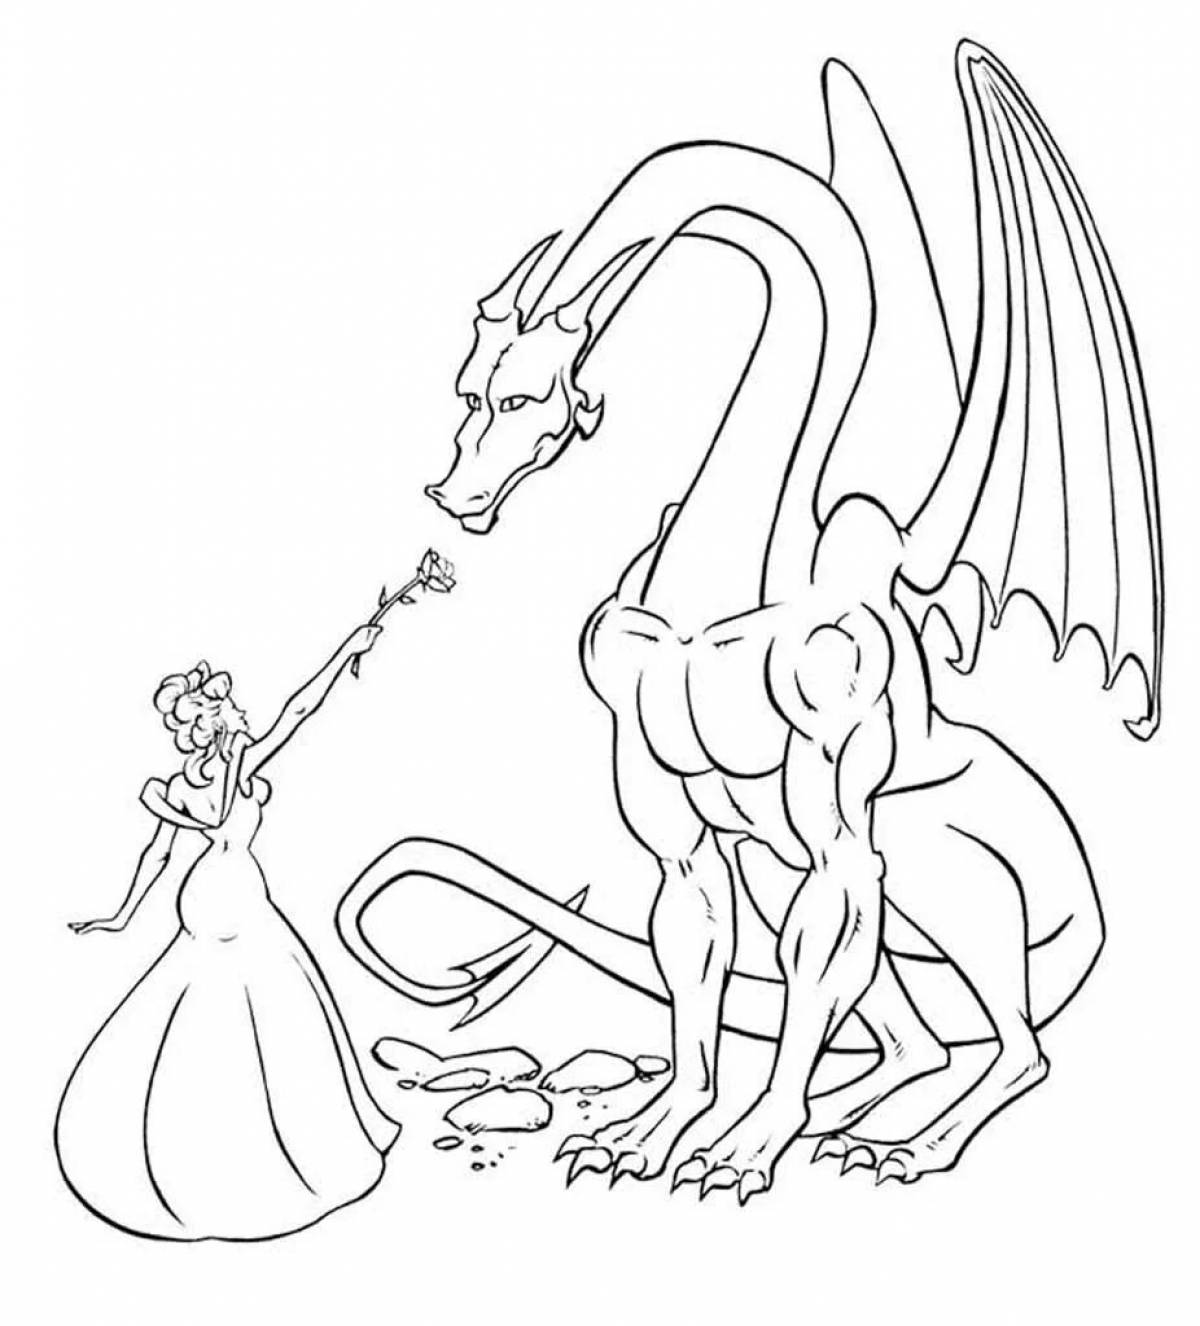 Princess knight and dragon #2